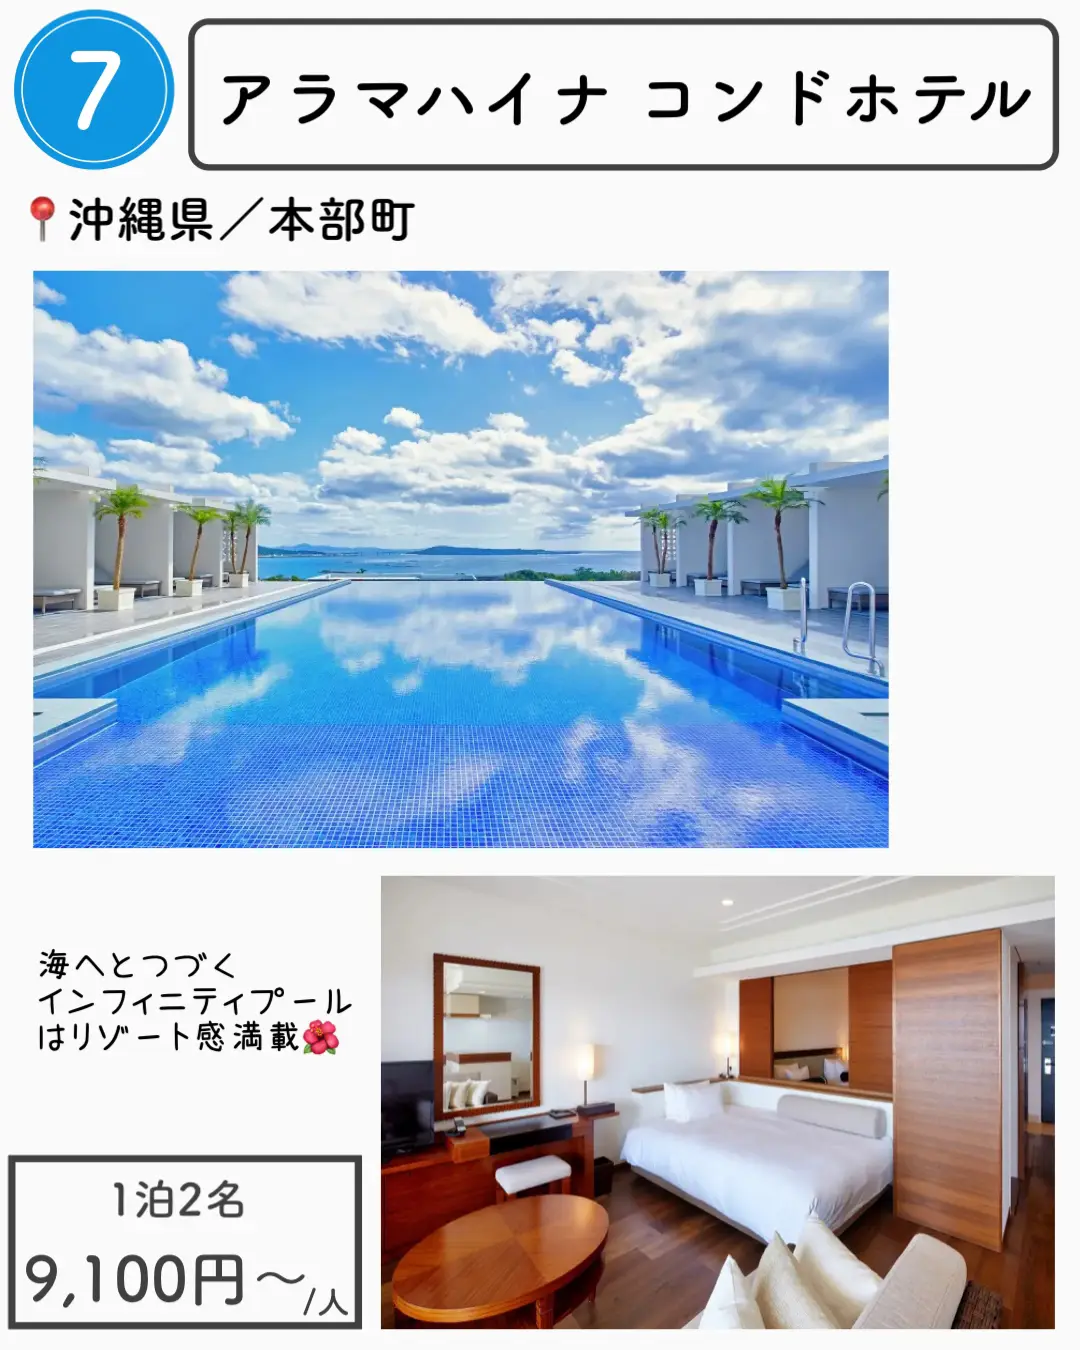 【沖縄】1万円以下で泊まれる沖縄ホテル7選の画像 (7枚目)